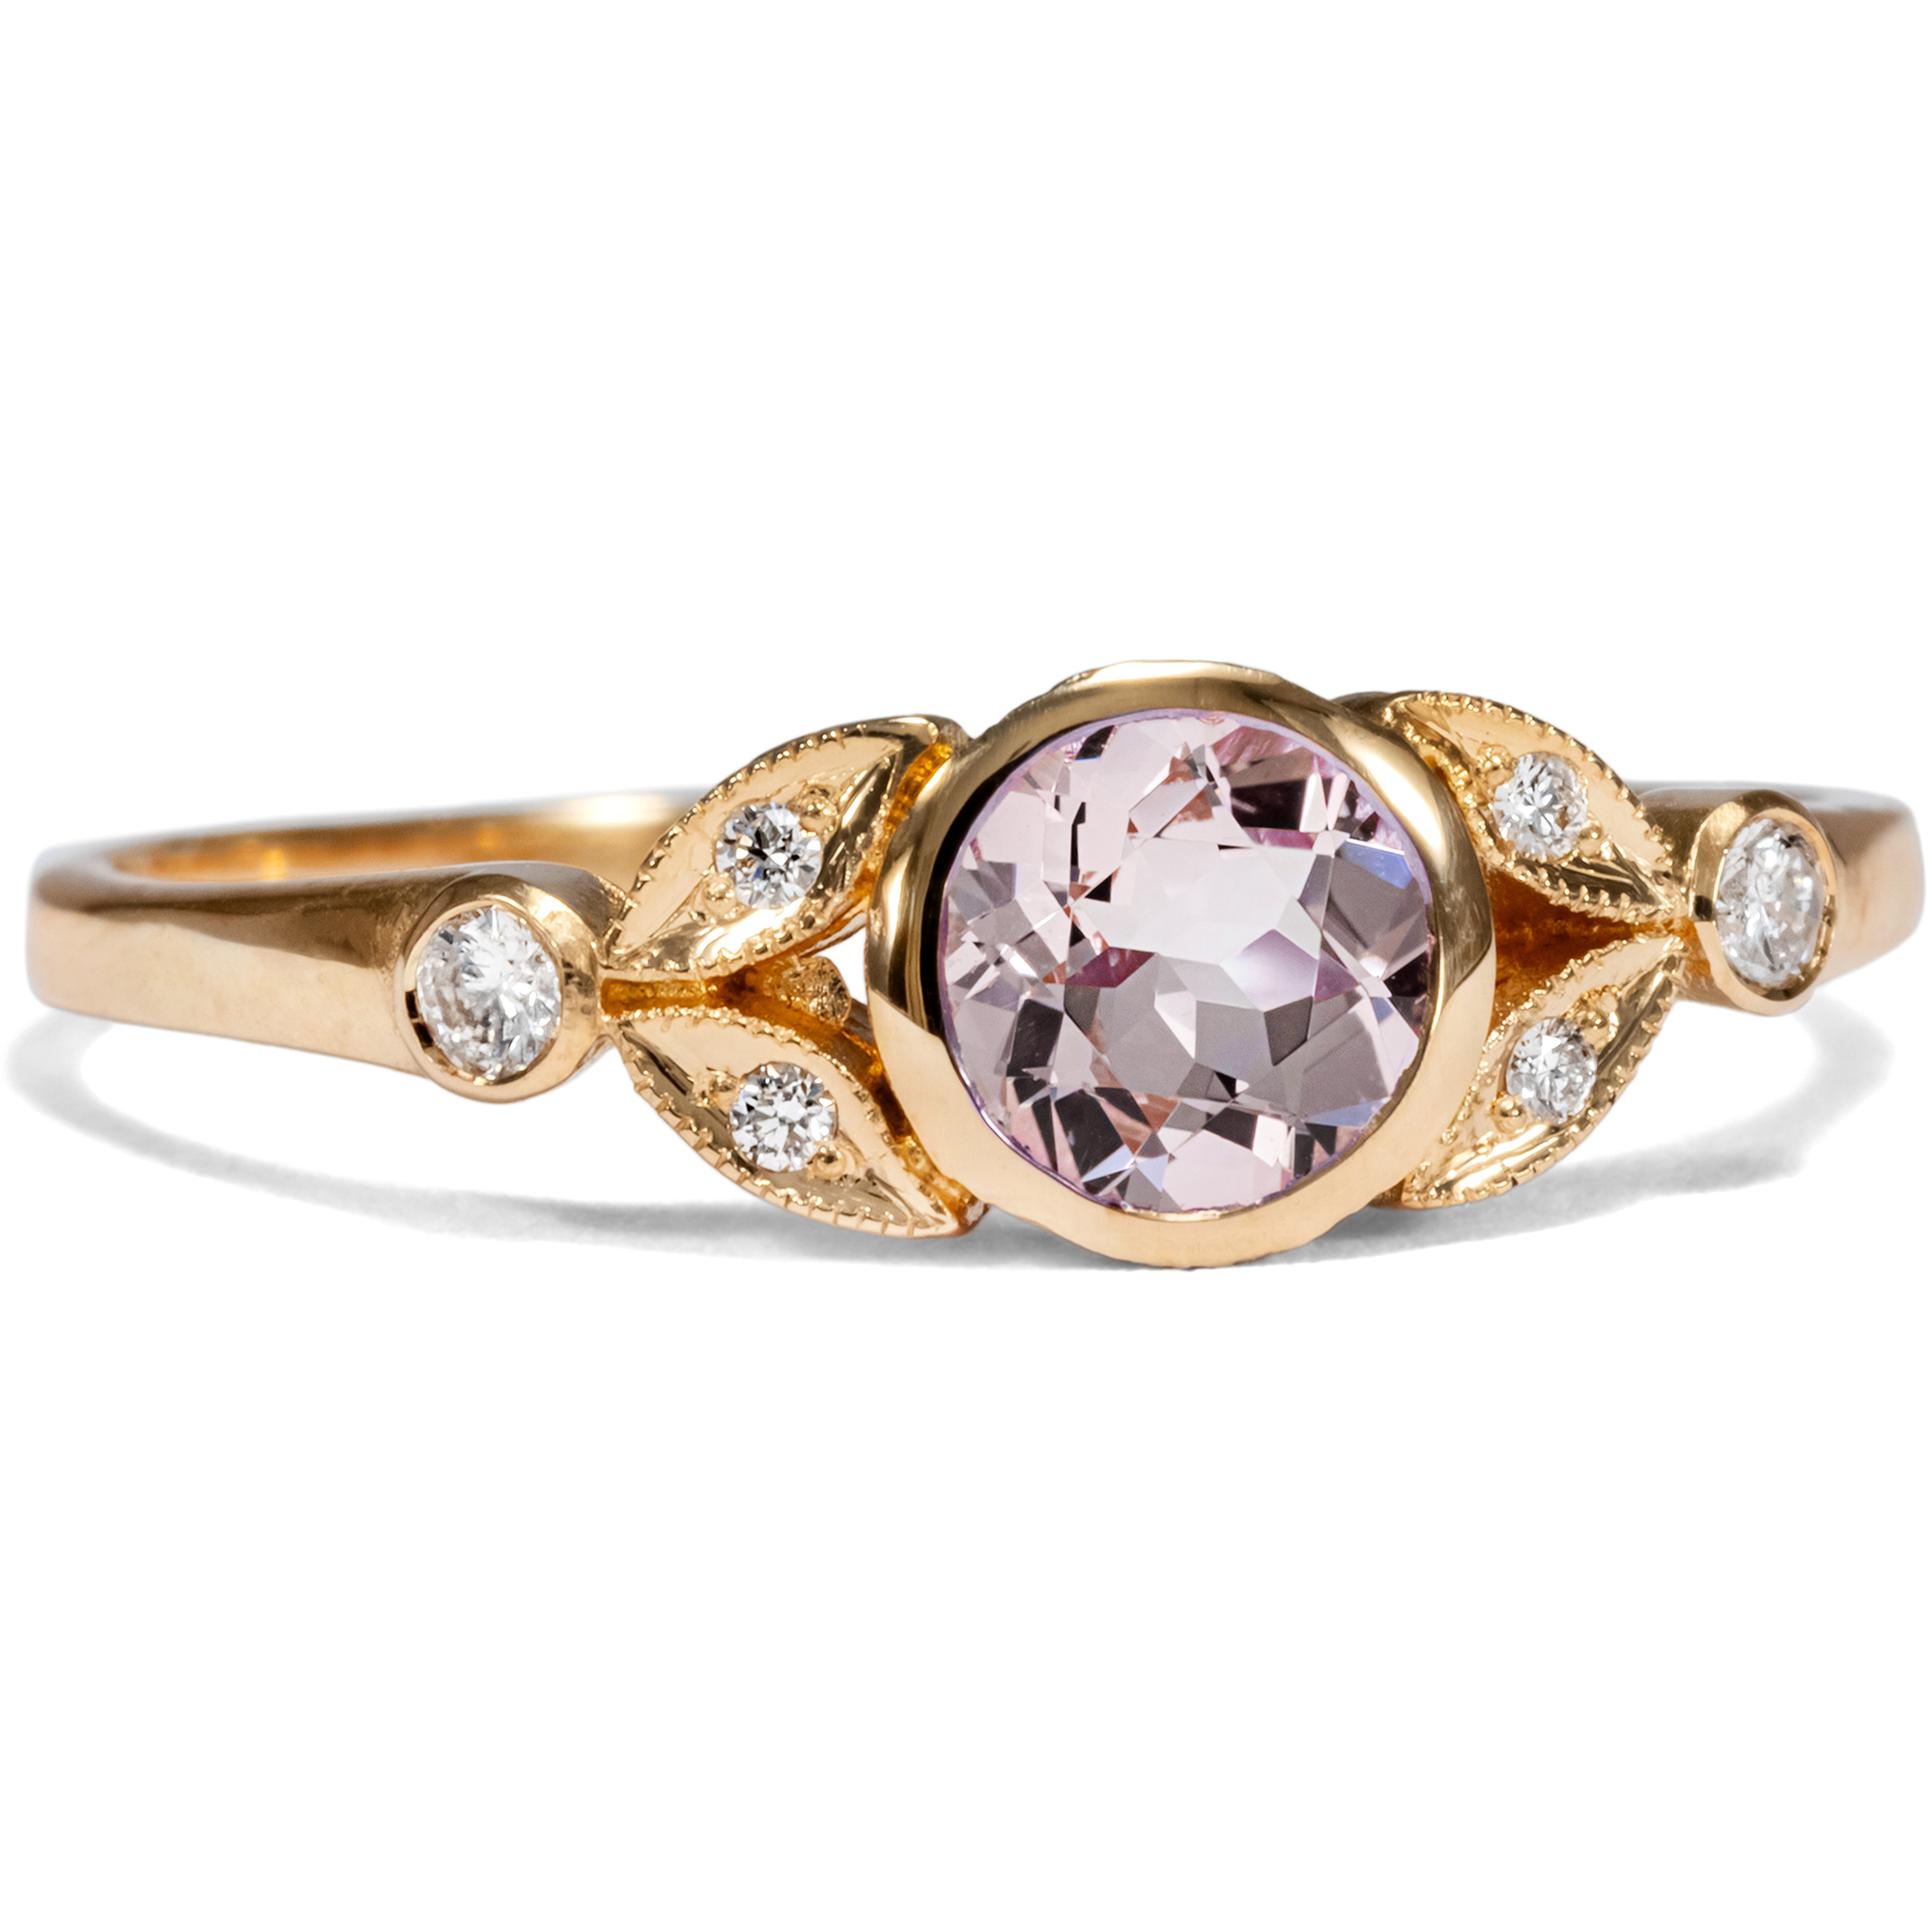 Bezaubernder Ring mit Morganit & Diamanten in Roségold aus unserer Werkstatt